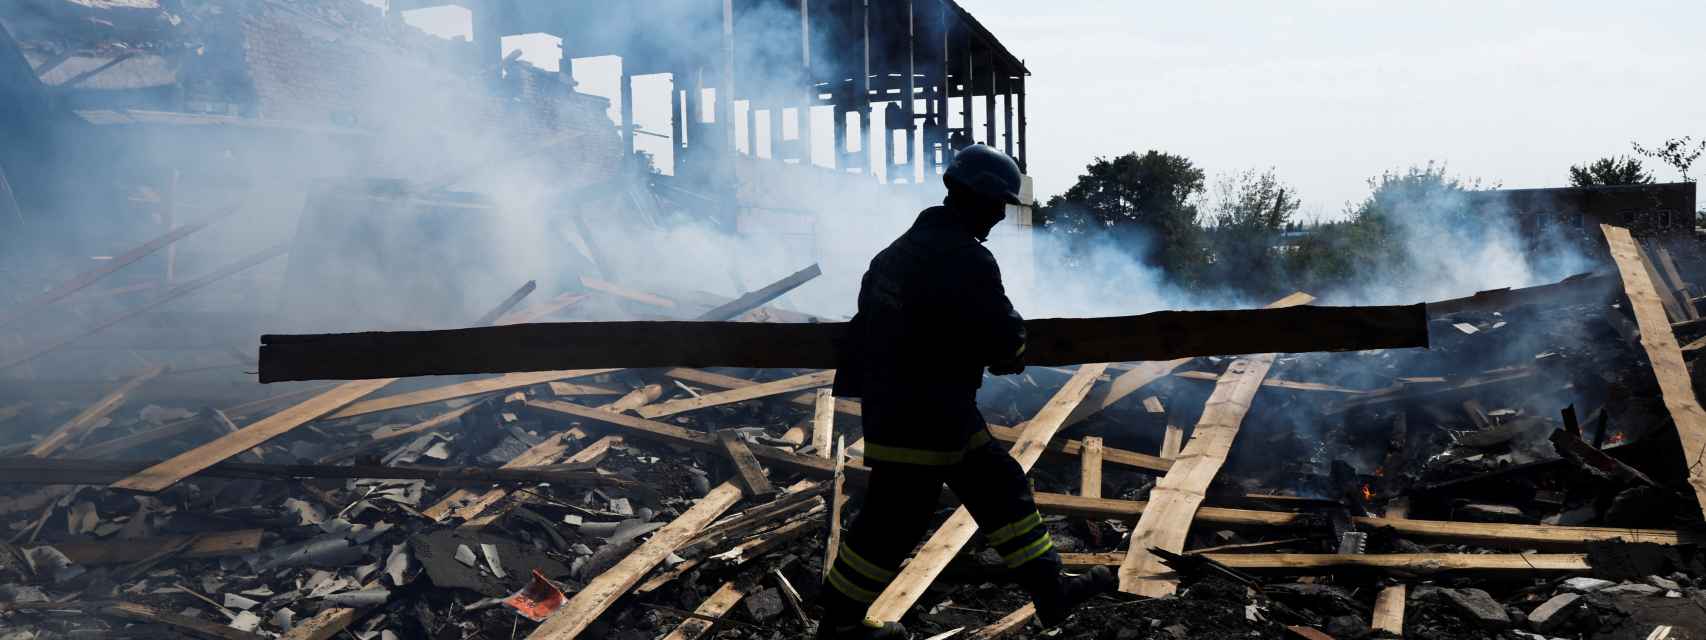 Un bombero ucraniano trabaja entre los escombros de una fábrica golpeada por los ataques rusos en Sloviansk